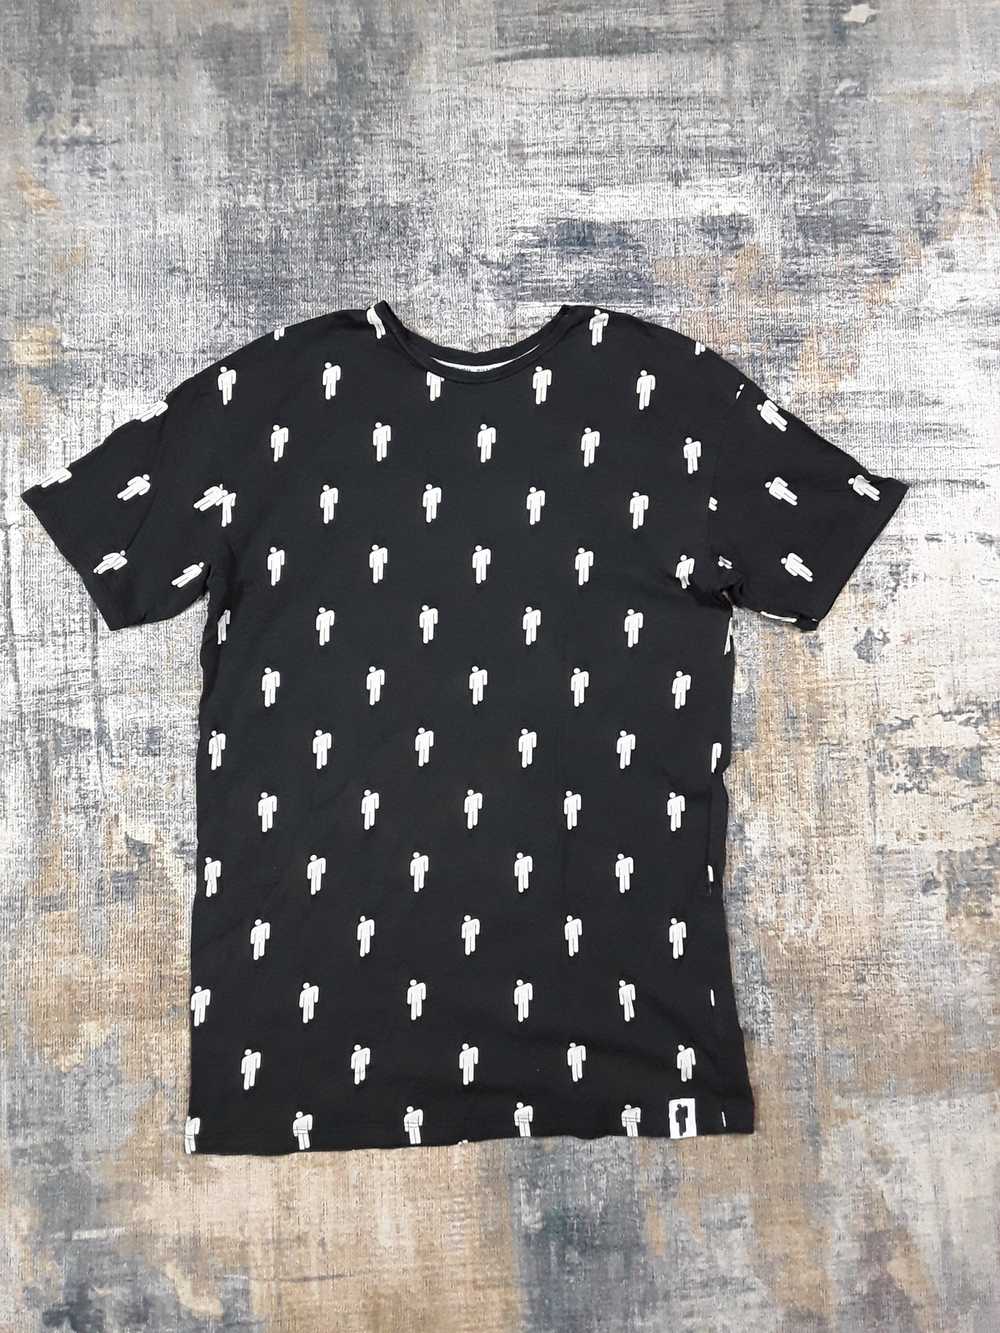 Billie Eilish × Streetwear Billie Eilish mens T-shirt… - Gem